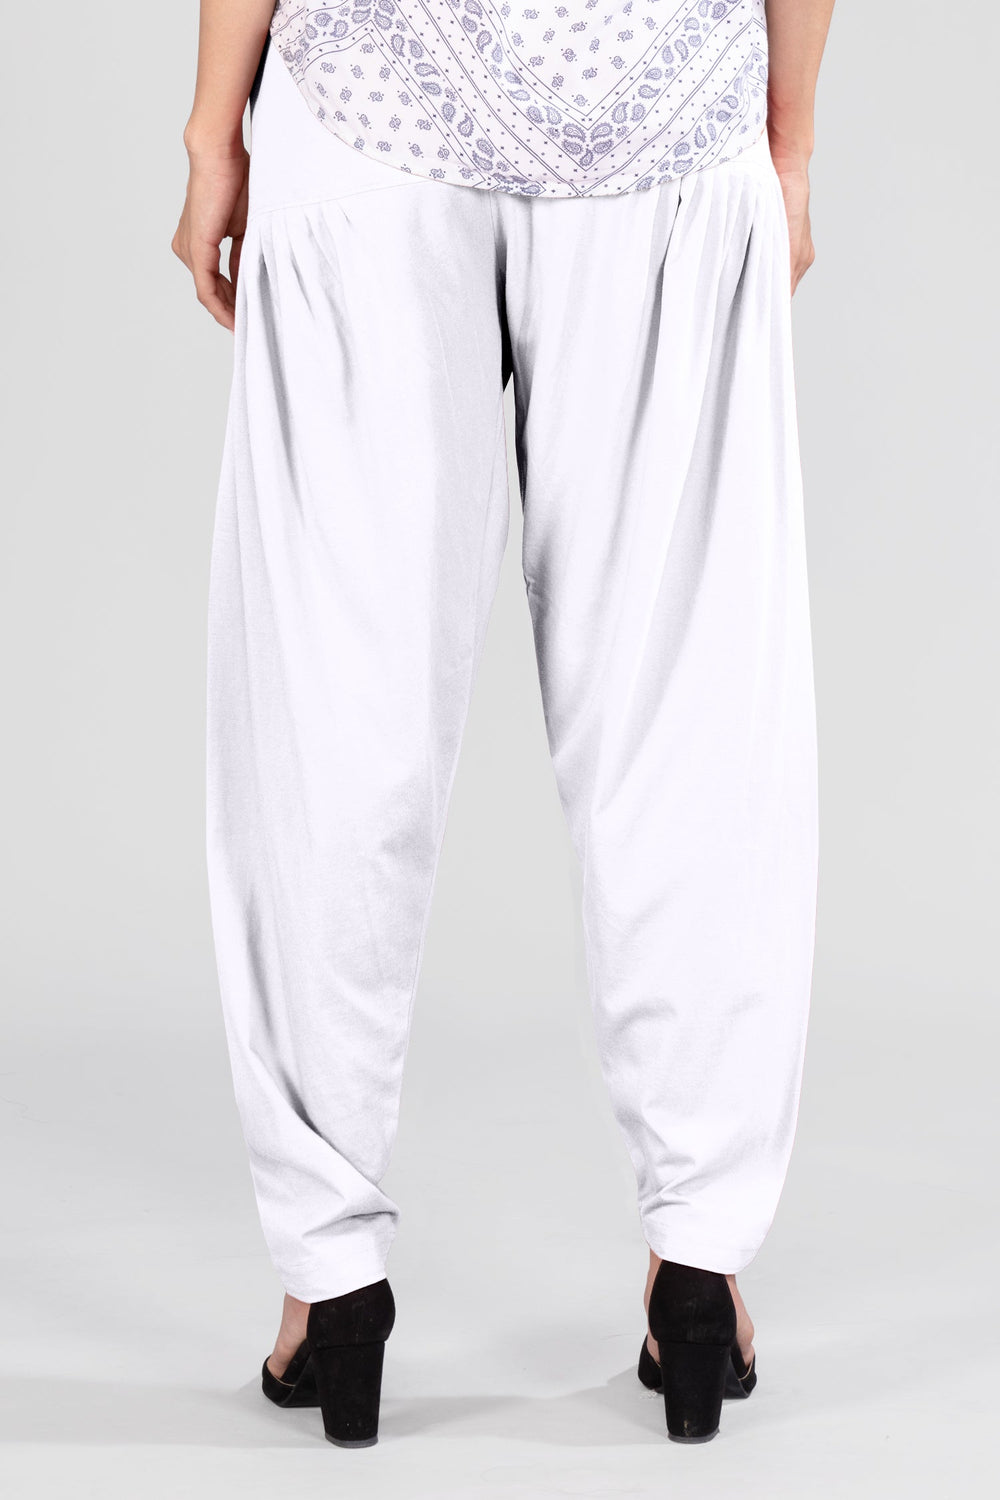 White Cotton Patiala Pants